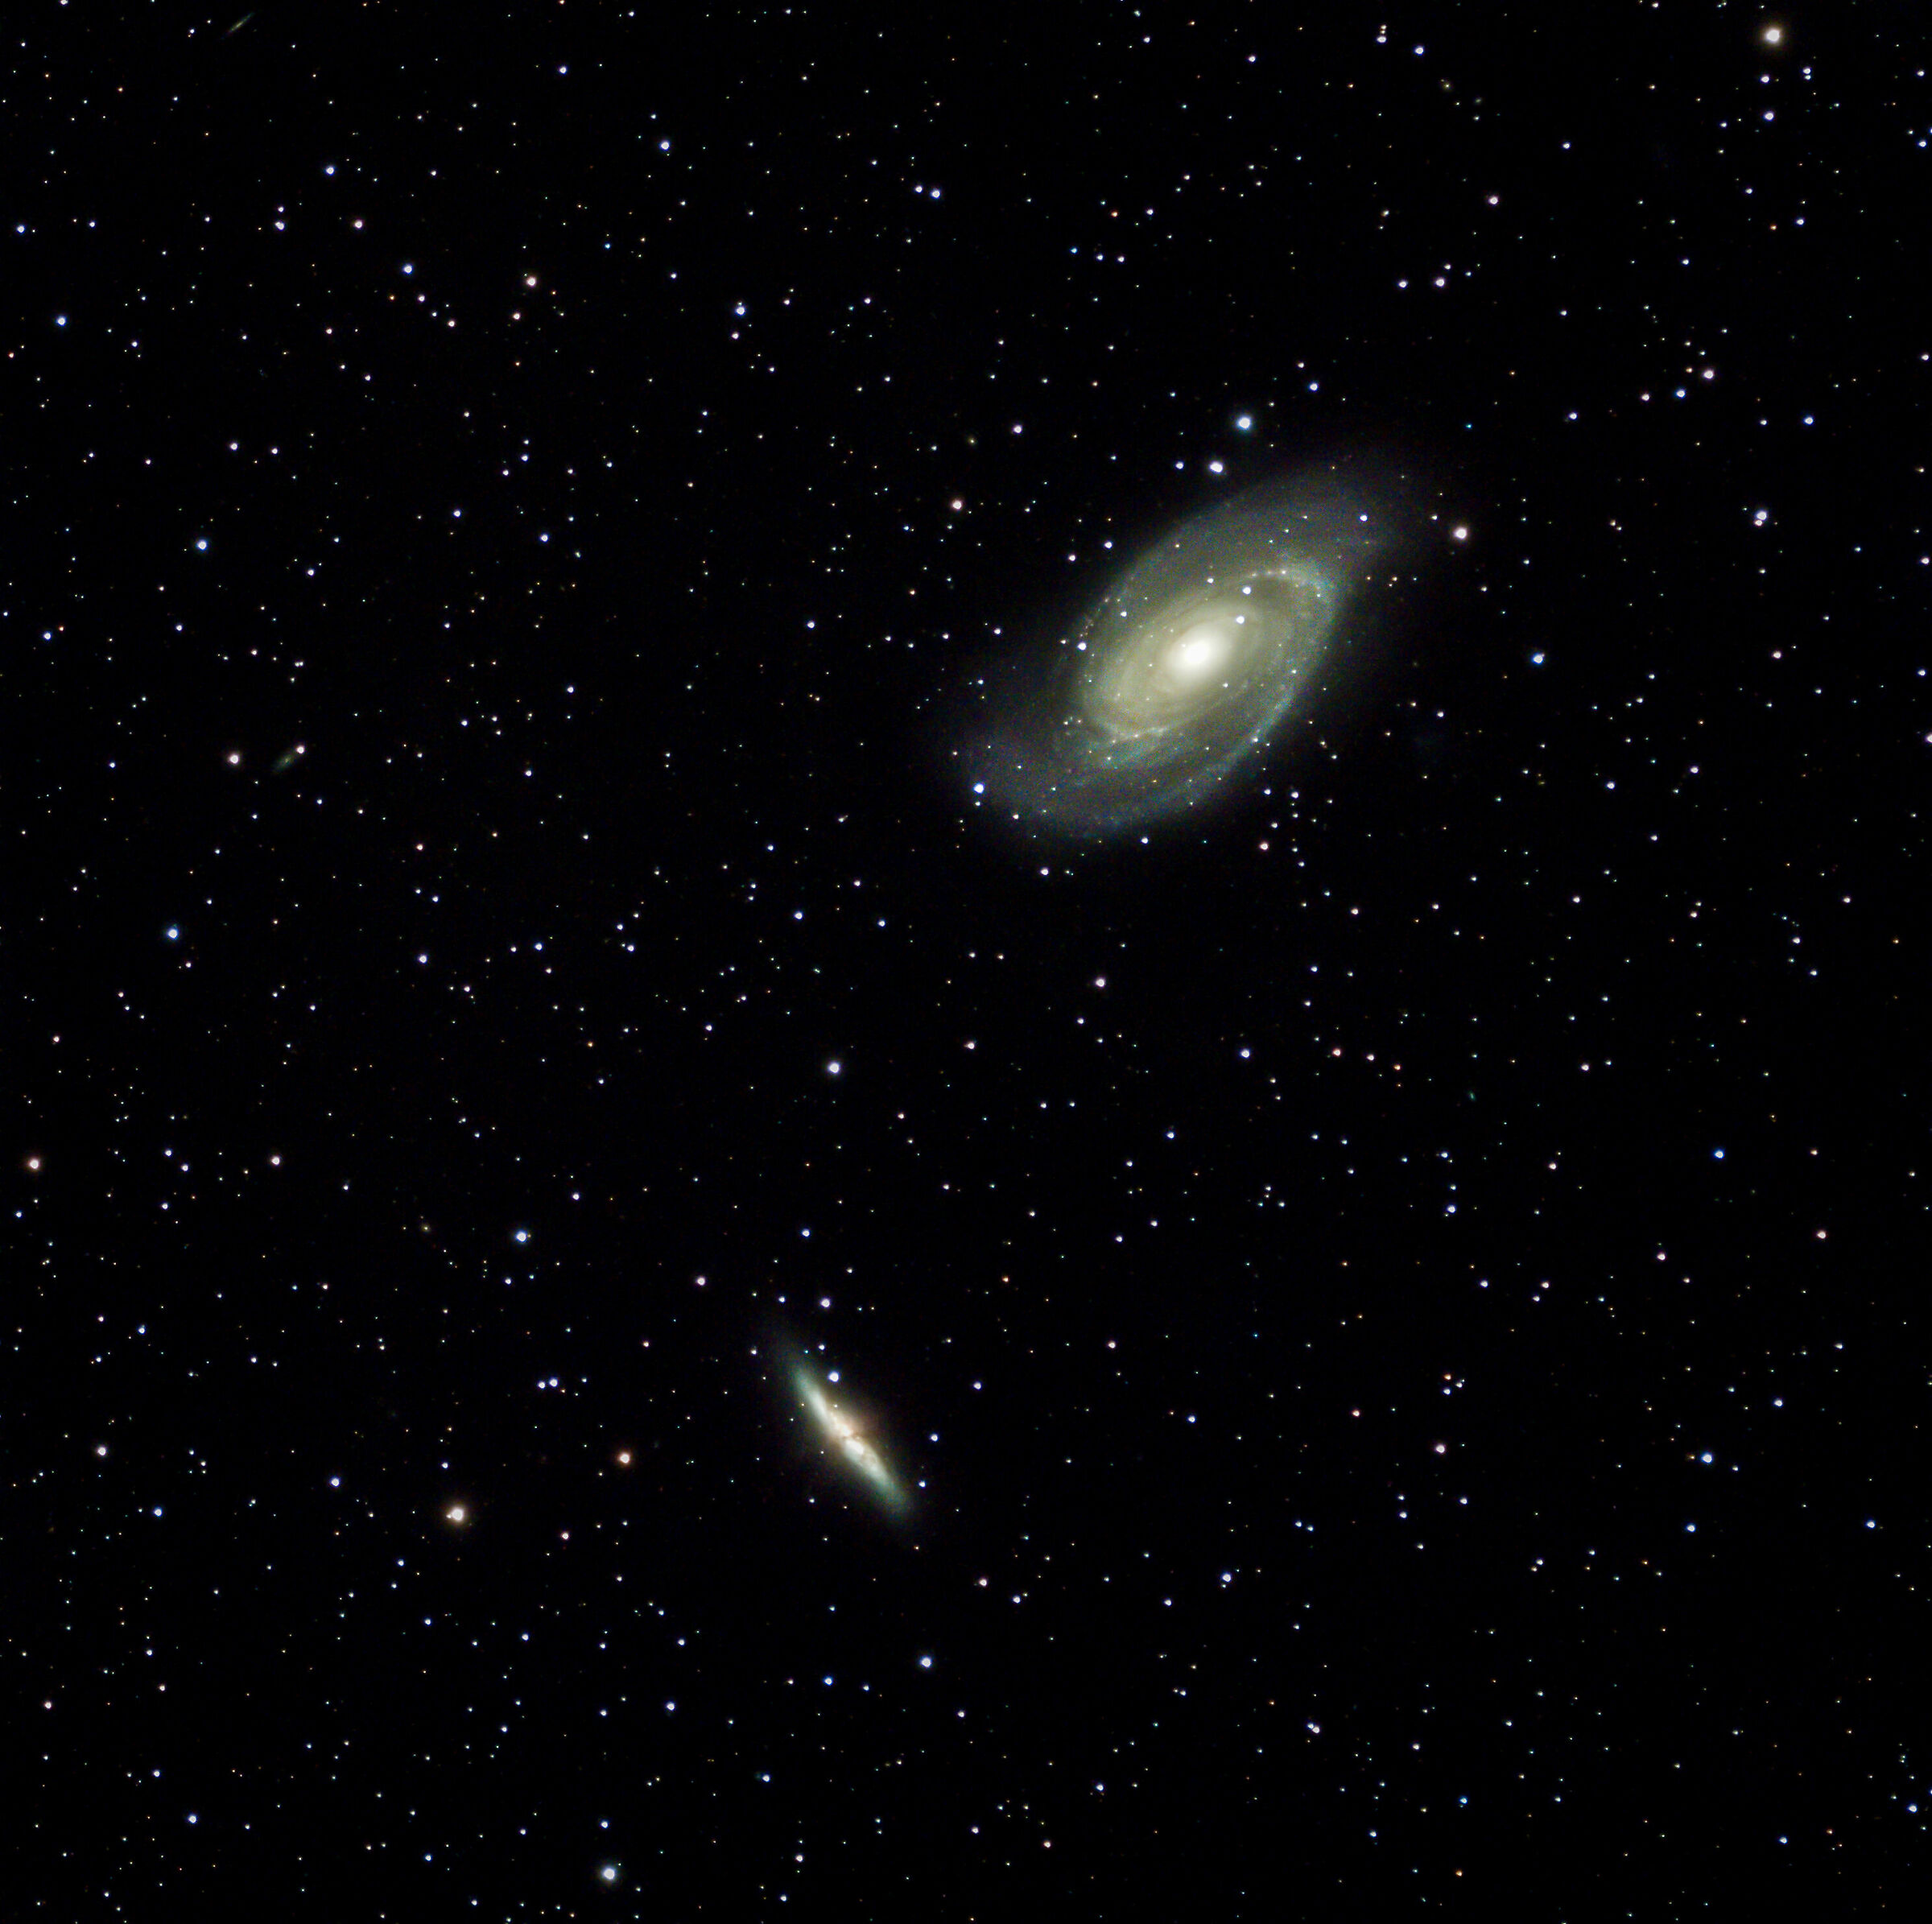 galassia di bode (m81) e galassia sigaro (m82)...